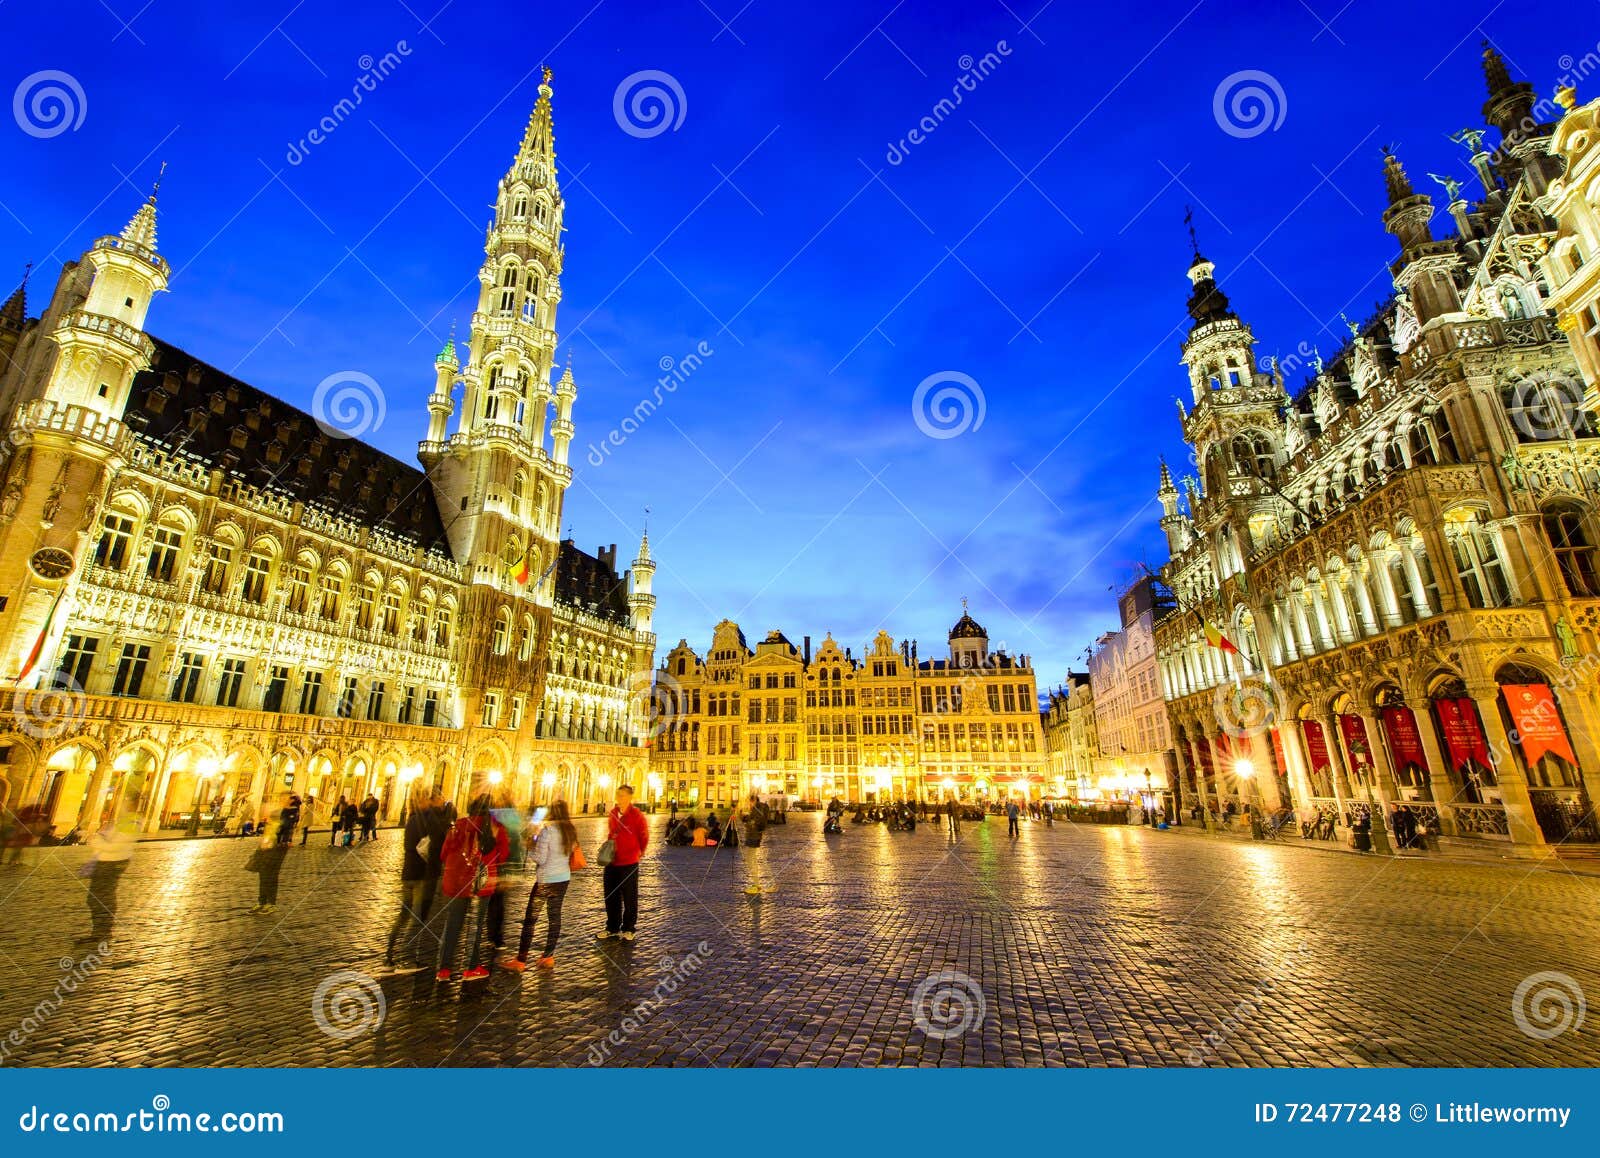 grand palace belgium tour